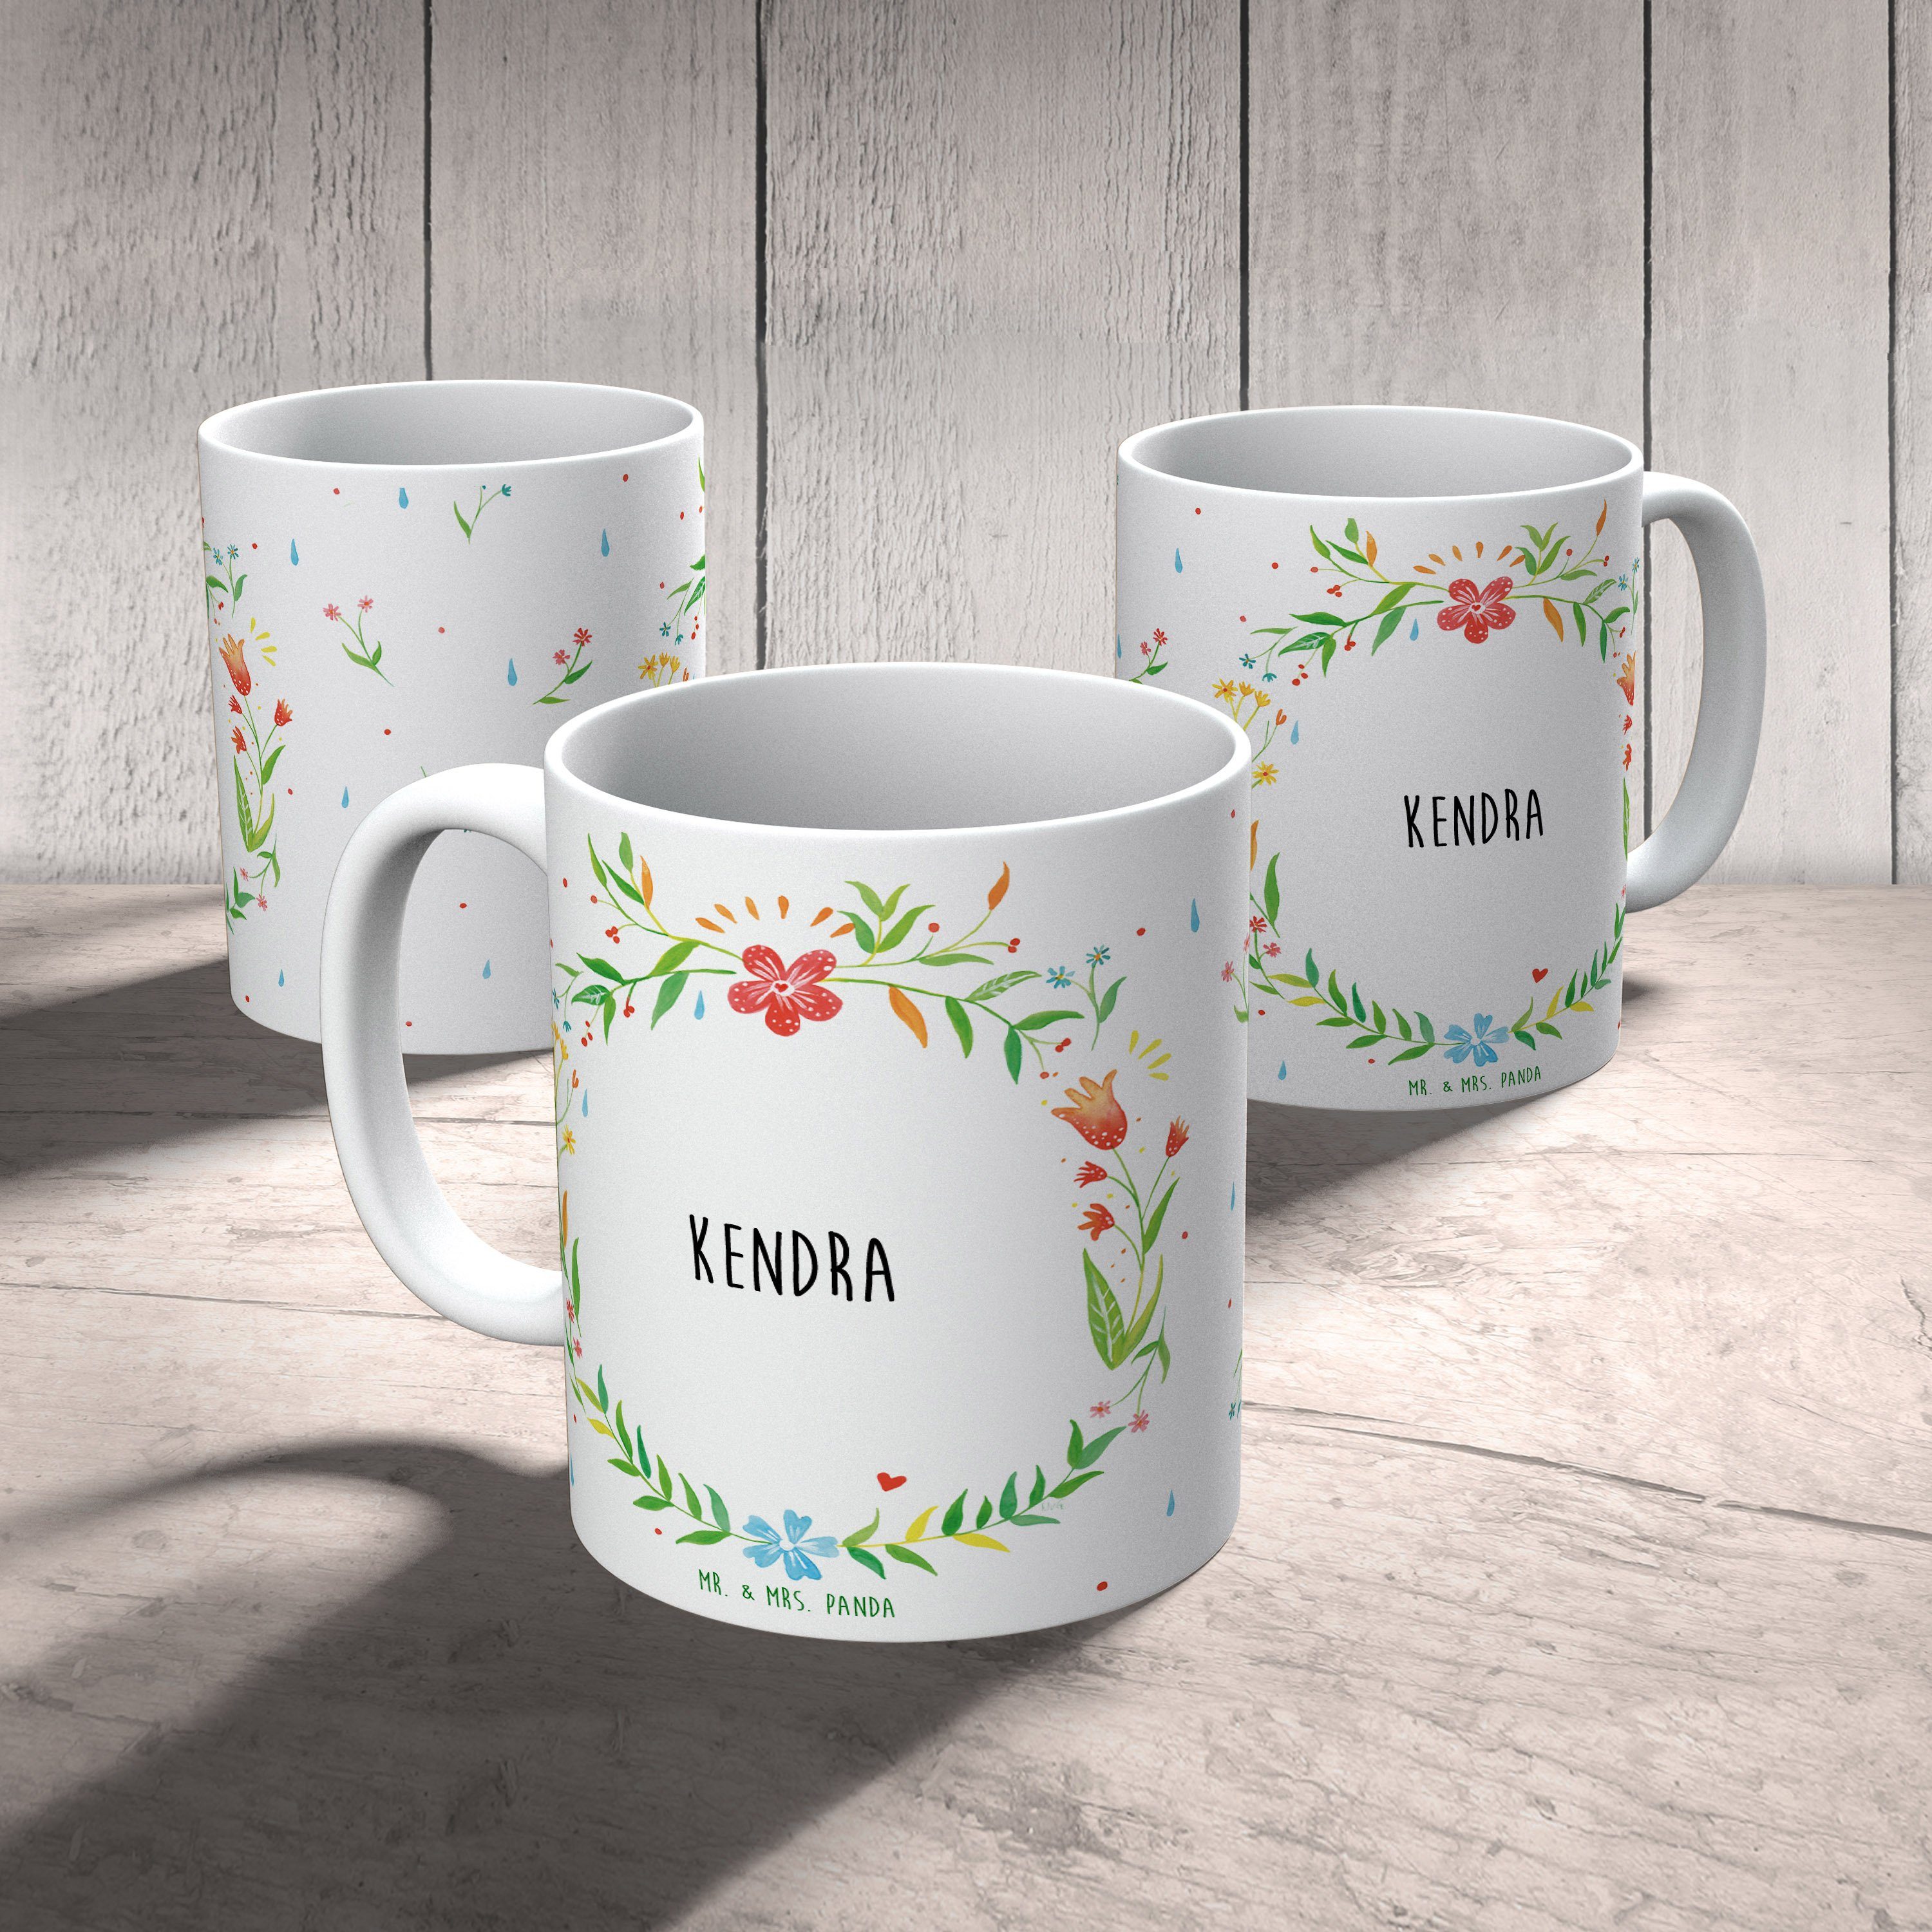 Mr. & Mrs. Panda Tasse Geschenk, Tasse Kendra Sprüche, Keramik Teetasse, - Geschenk Tasse Ta, Motive